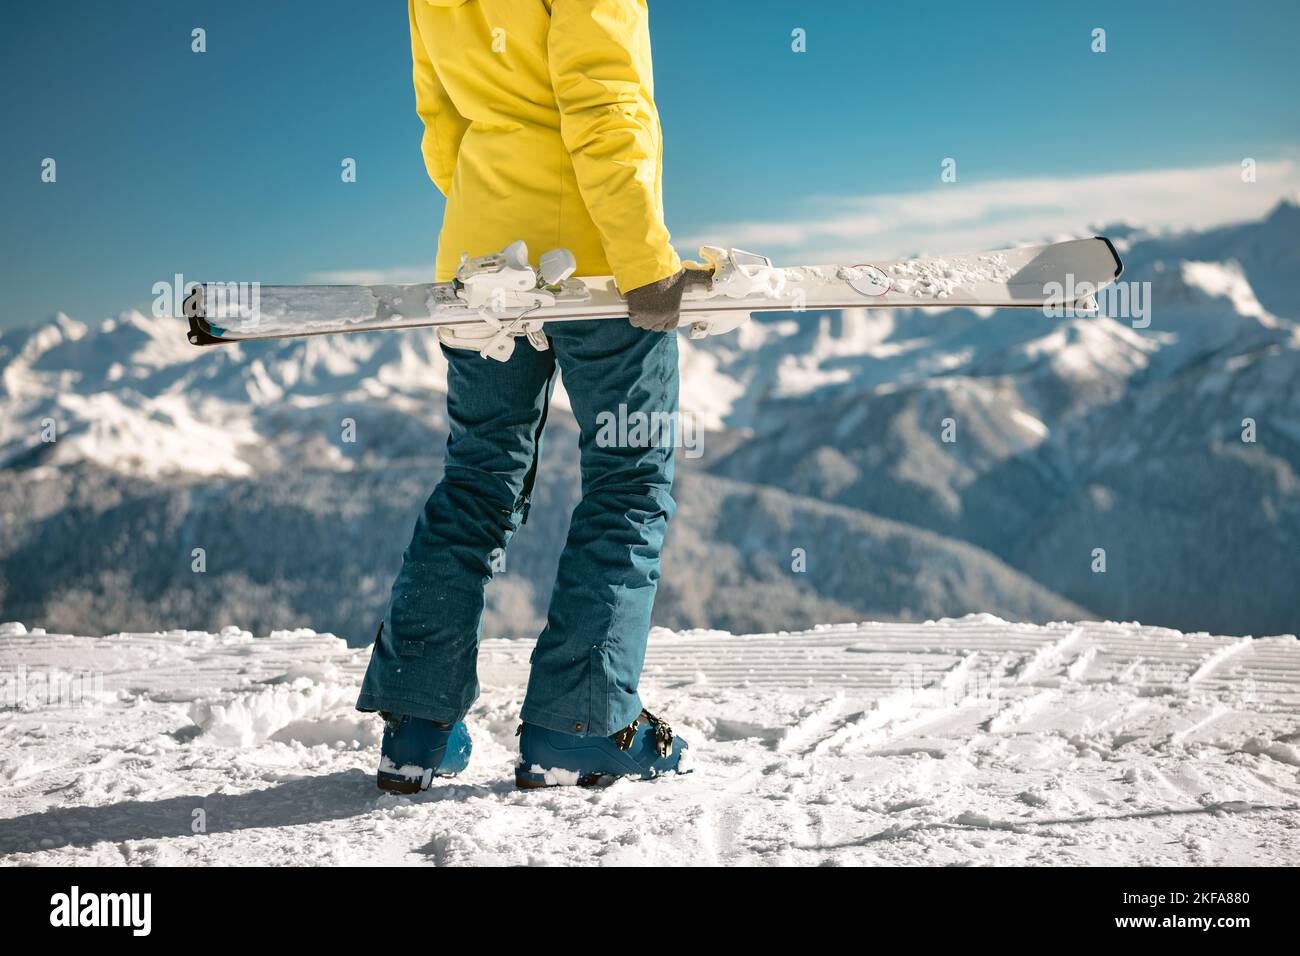 Gros plan photo d'une fille debout avec le ski entre les mains. Concept week-end de ski Banque D'Images